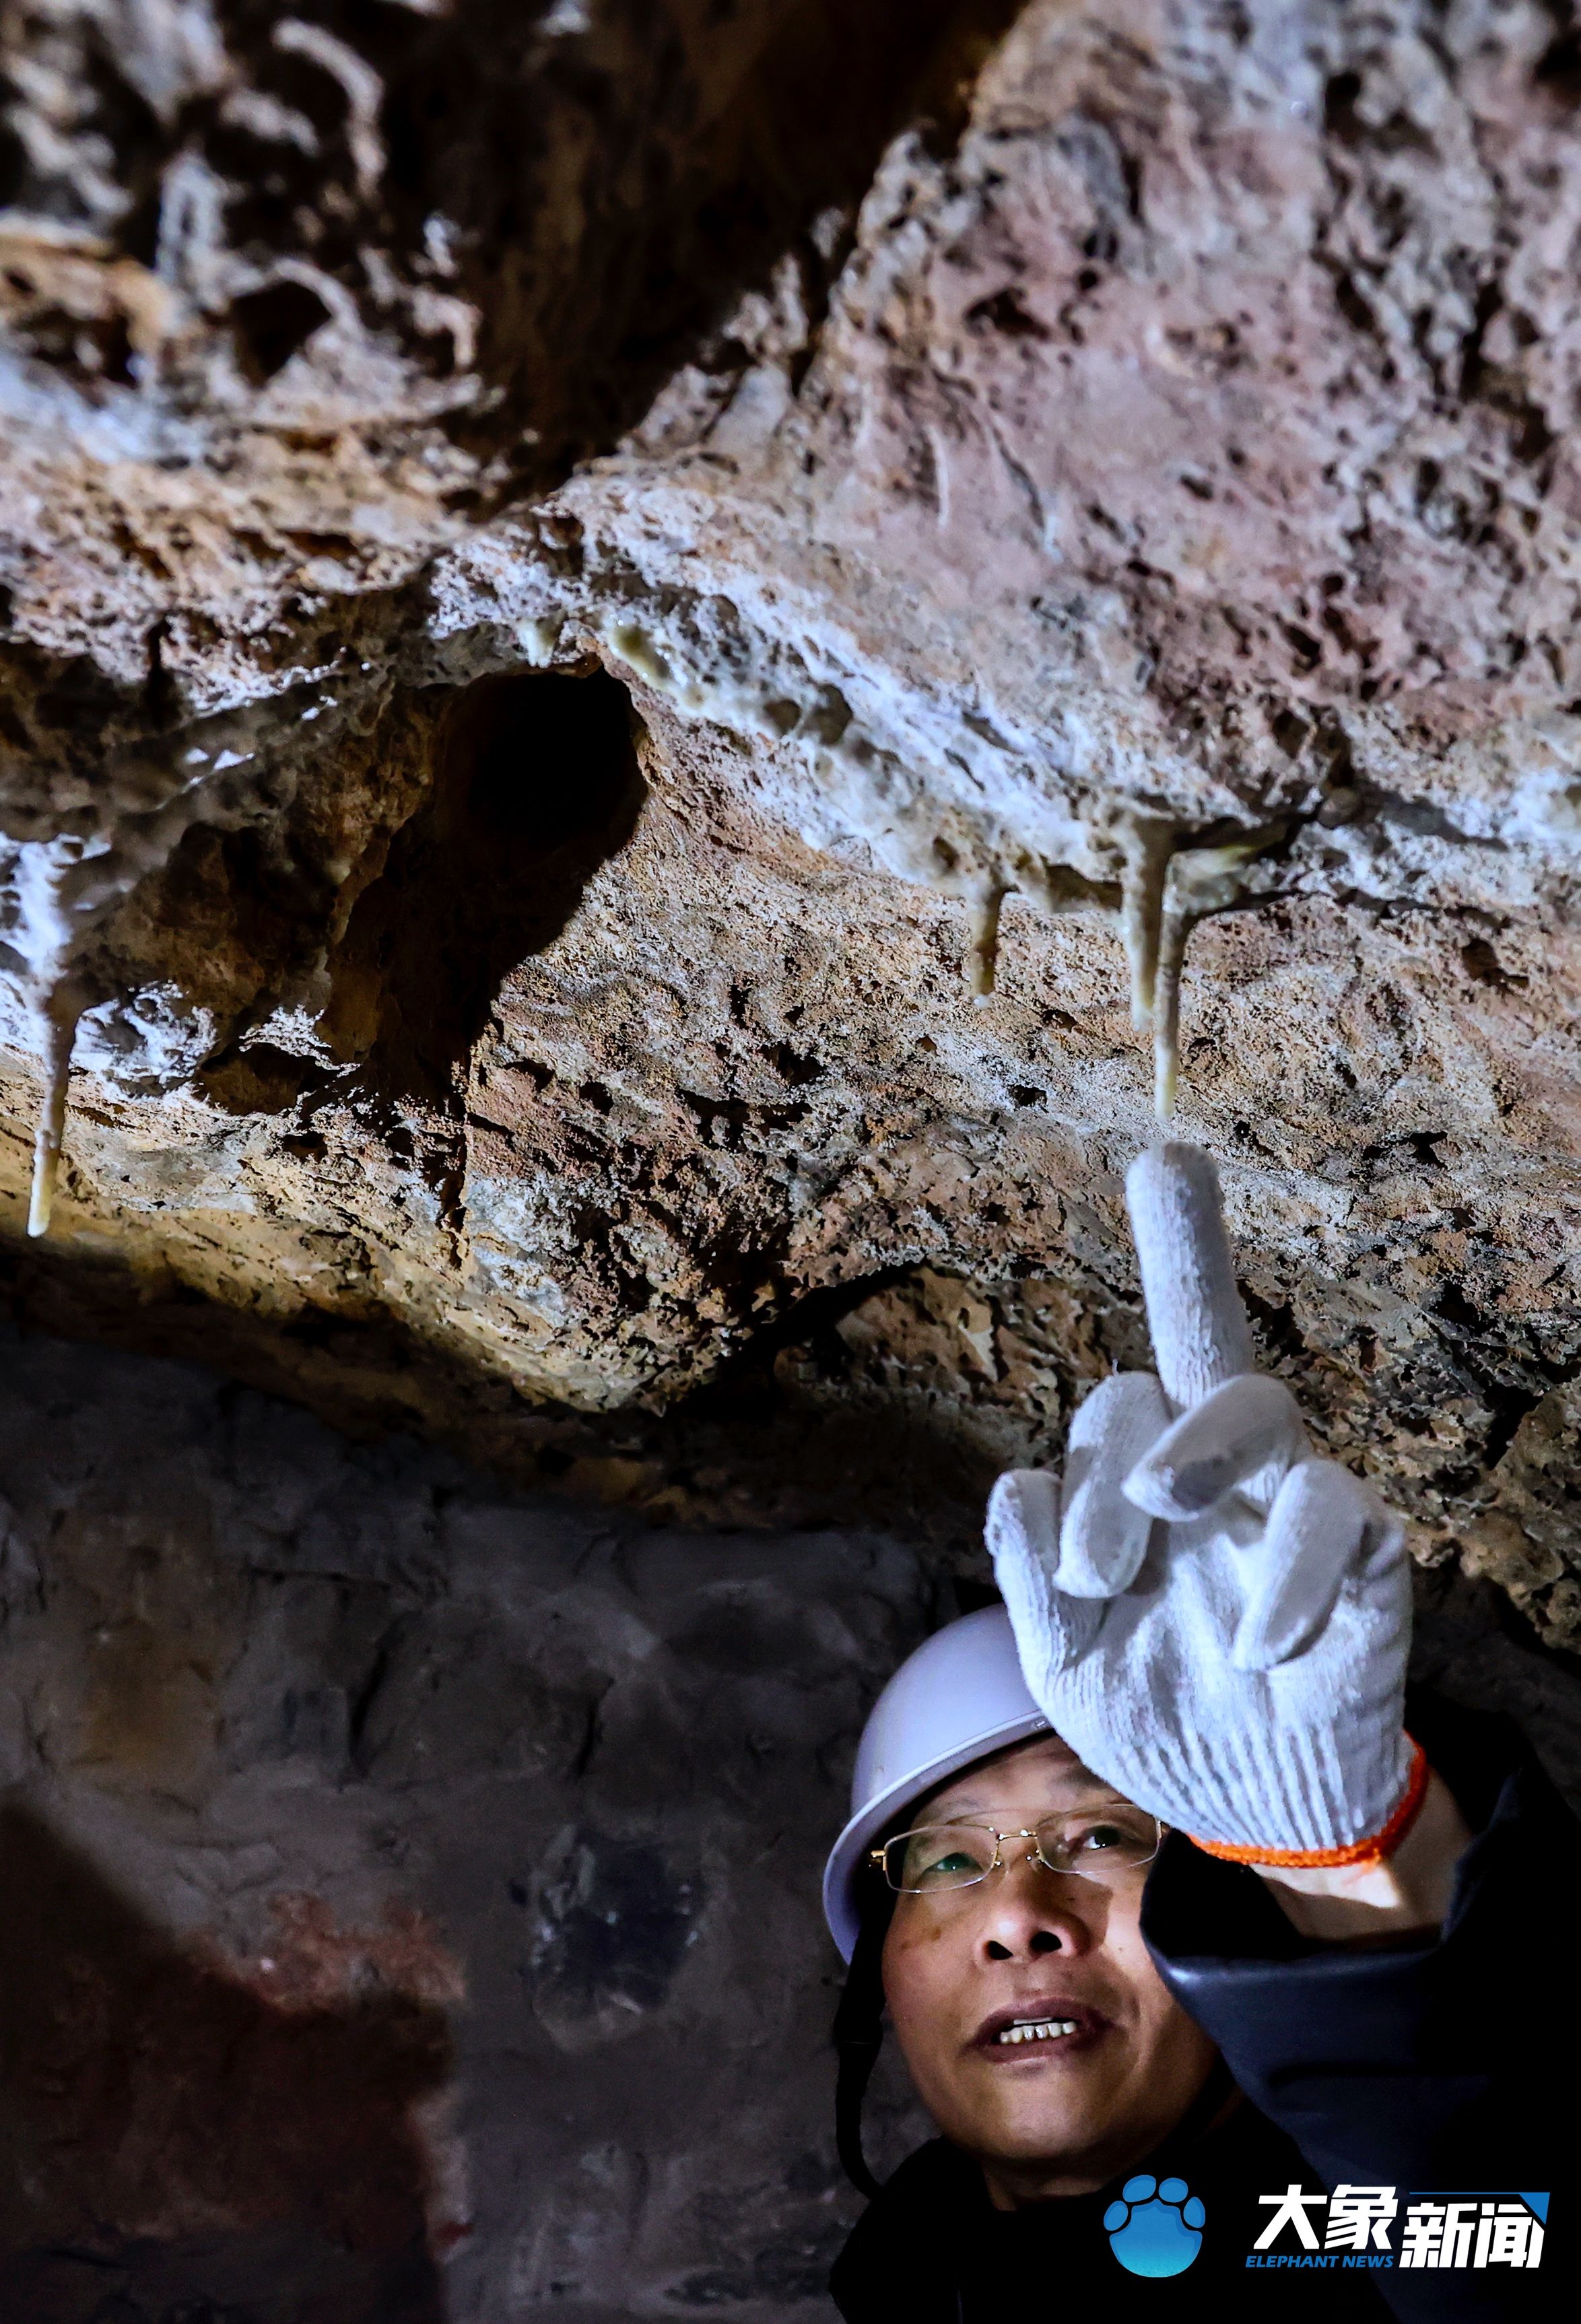 神仙洞|探秘龙门石窟“神仙洞”： 顶部挂着的水珠犹如满天繁星